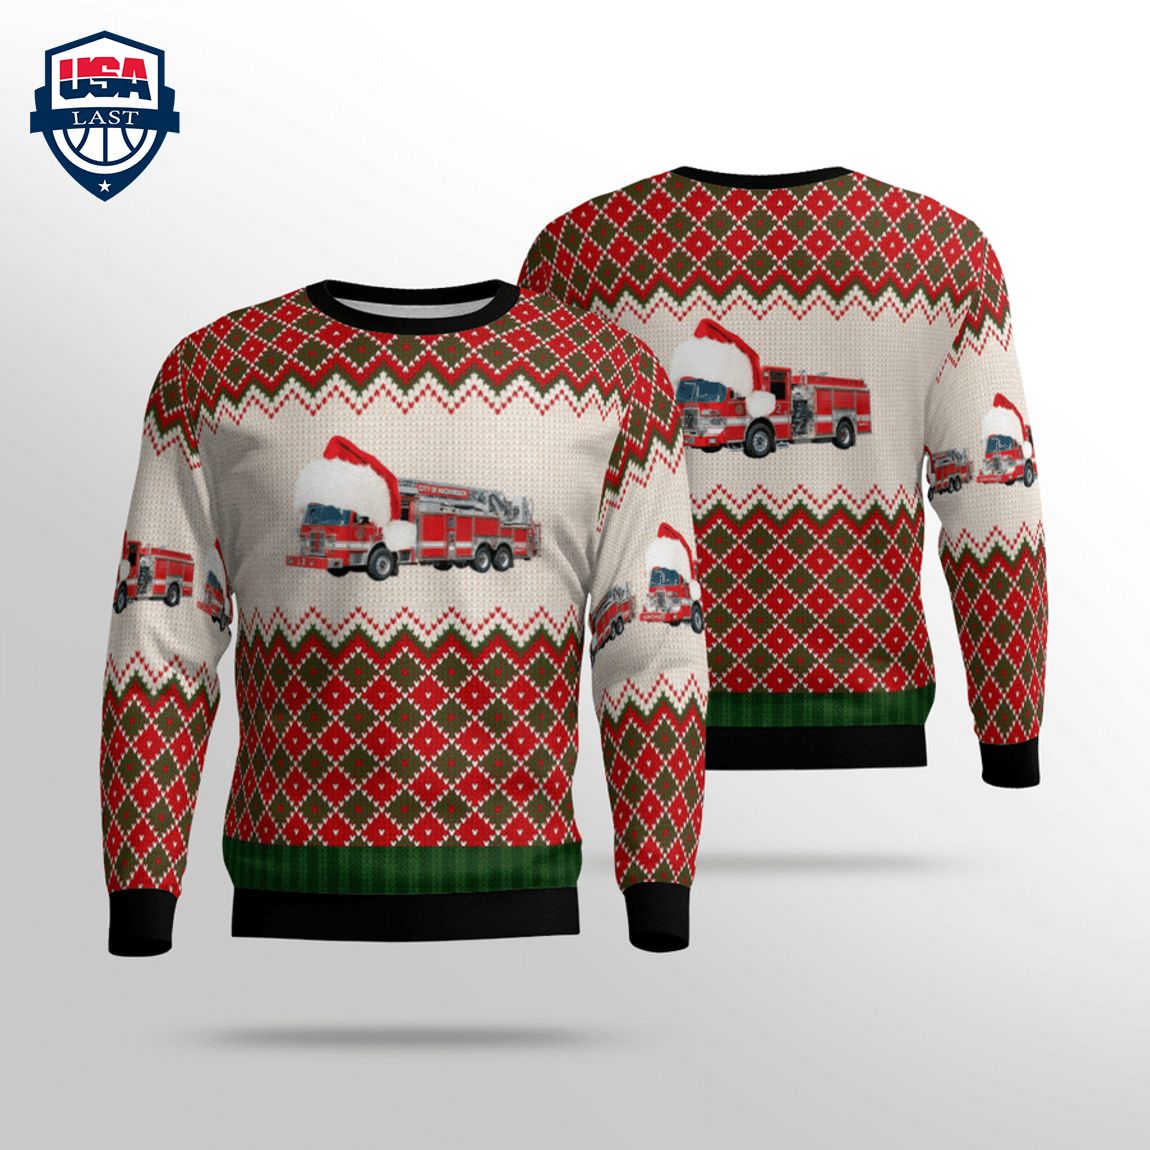 new-jersey-hackensack-fire-department-3d-christmas-sweater-1-Qhs1K.jpg